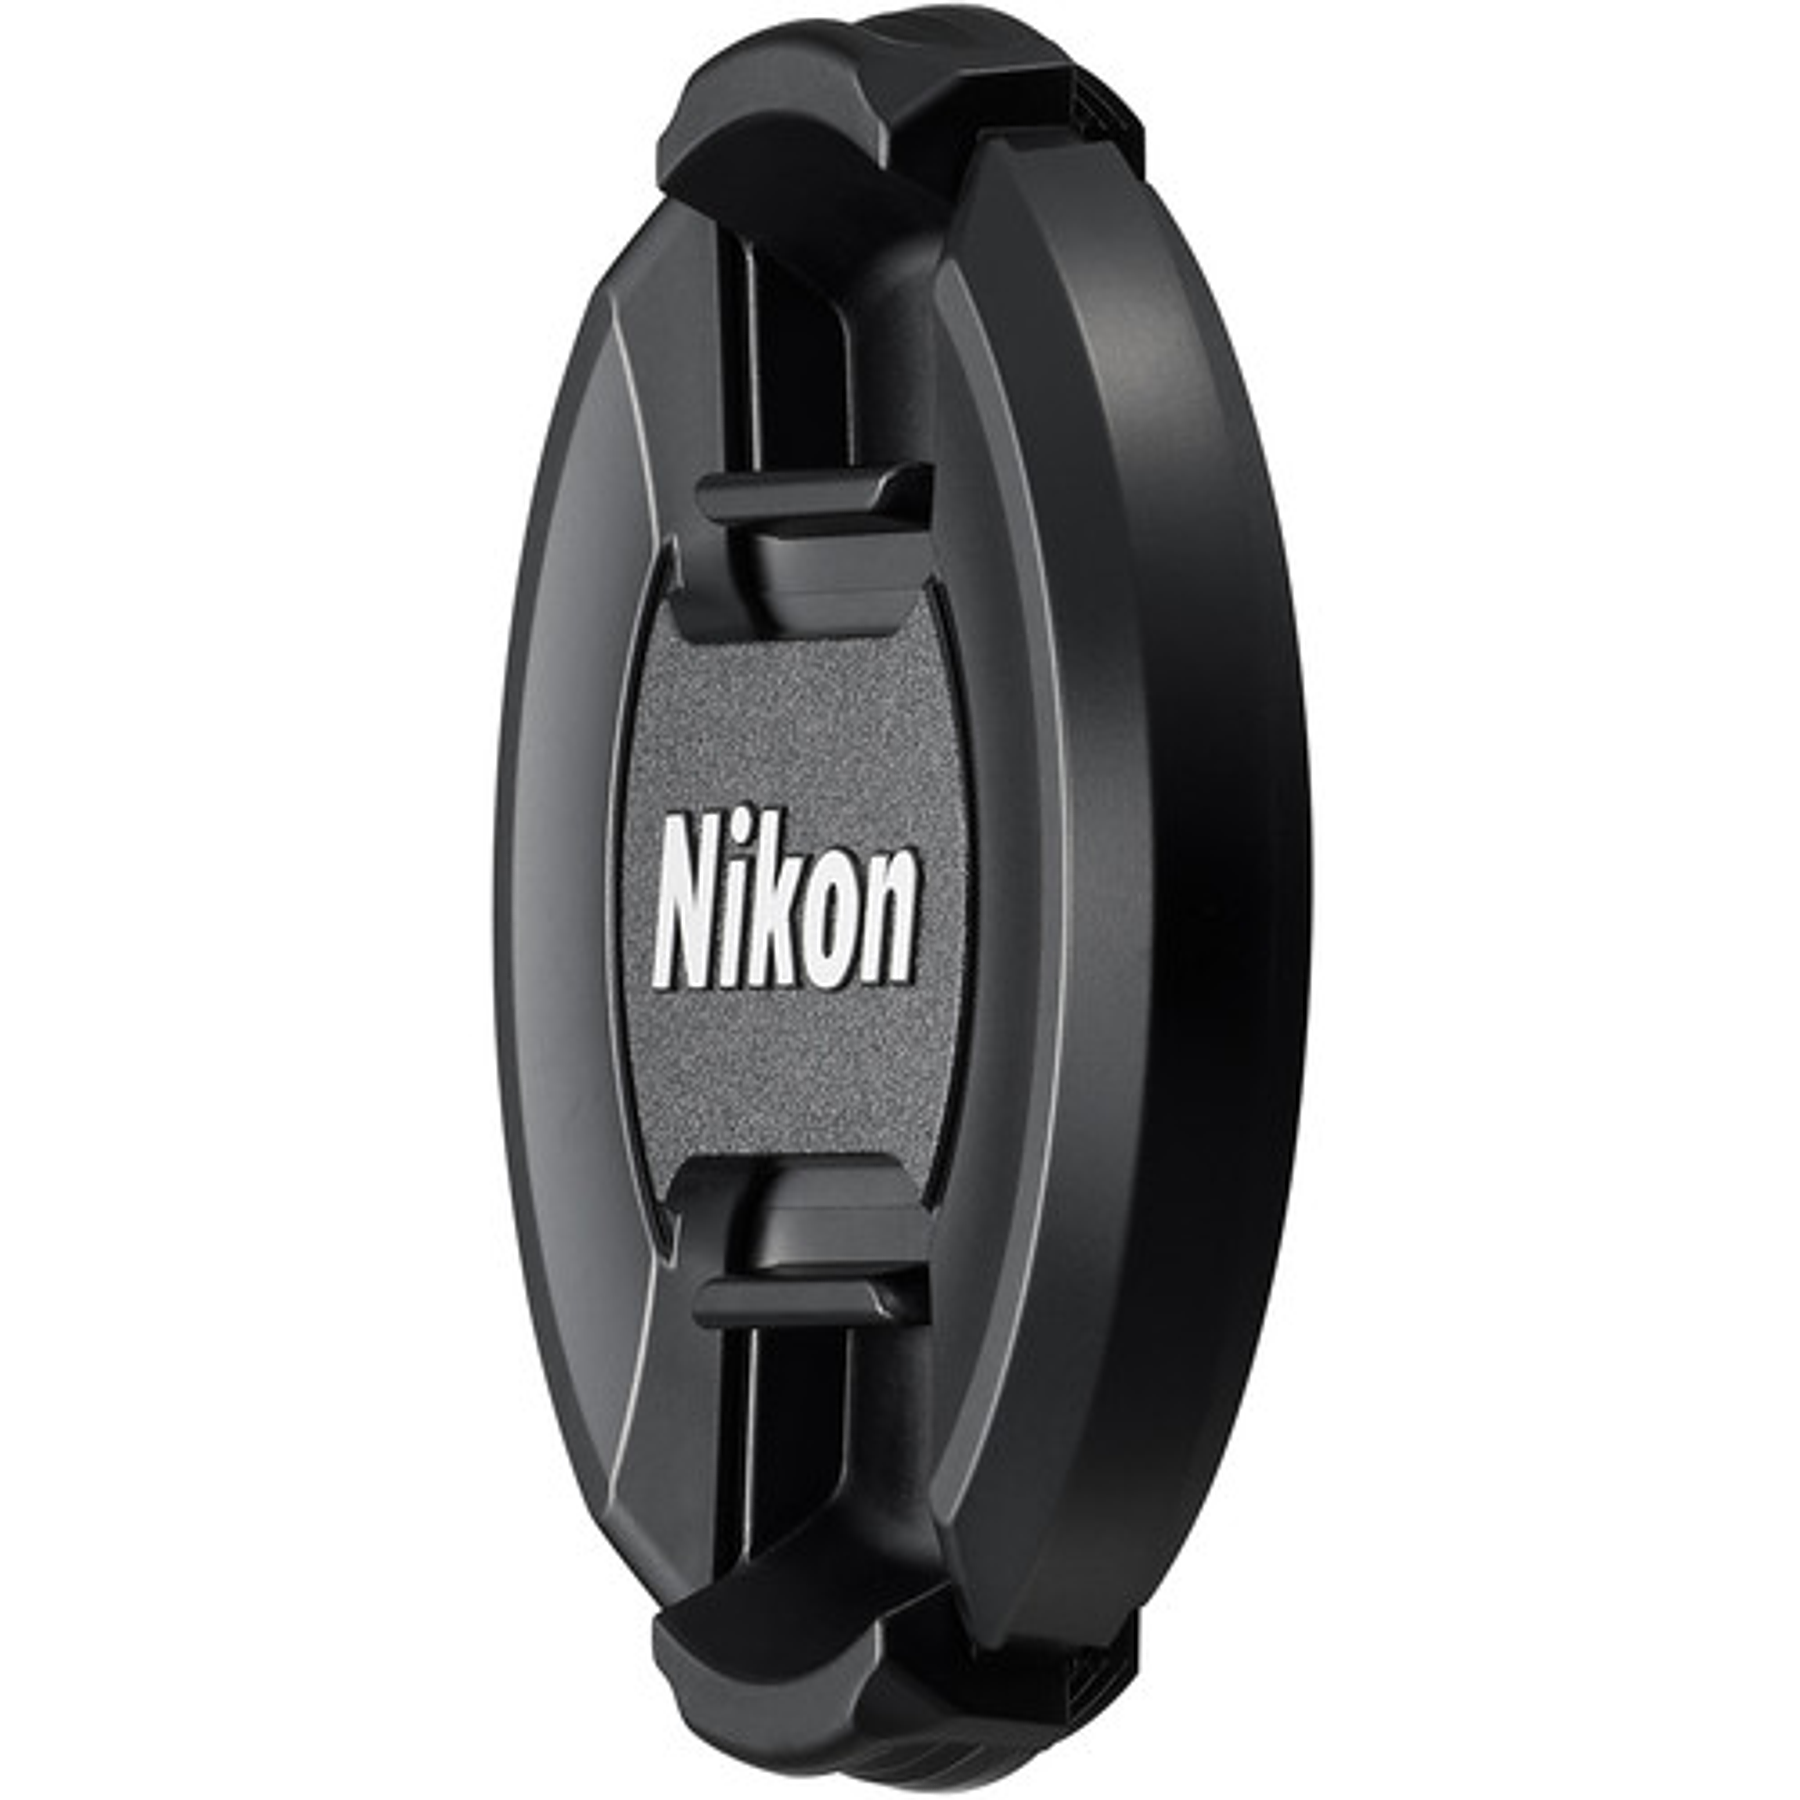 Nikon AF-P DX NIKKOR 18-55mm f/3.5-5.6G